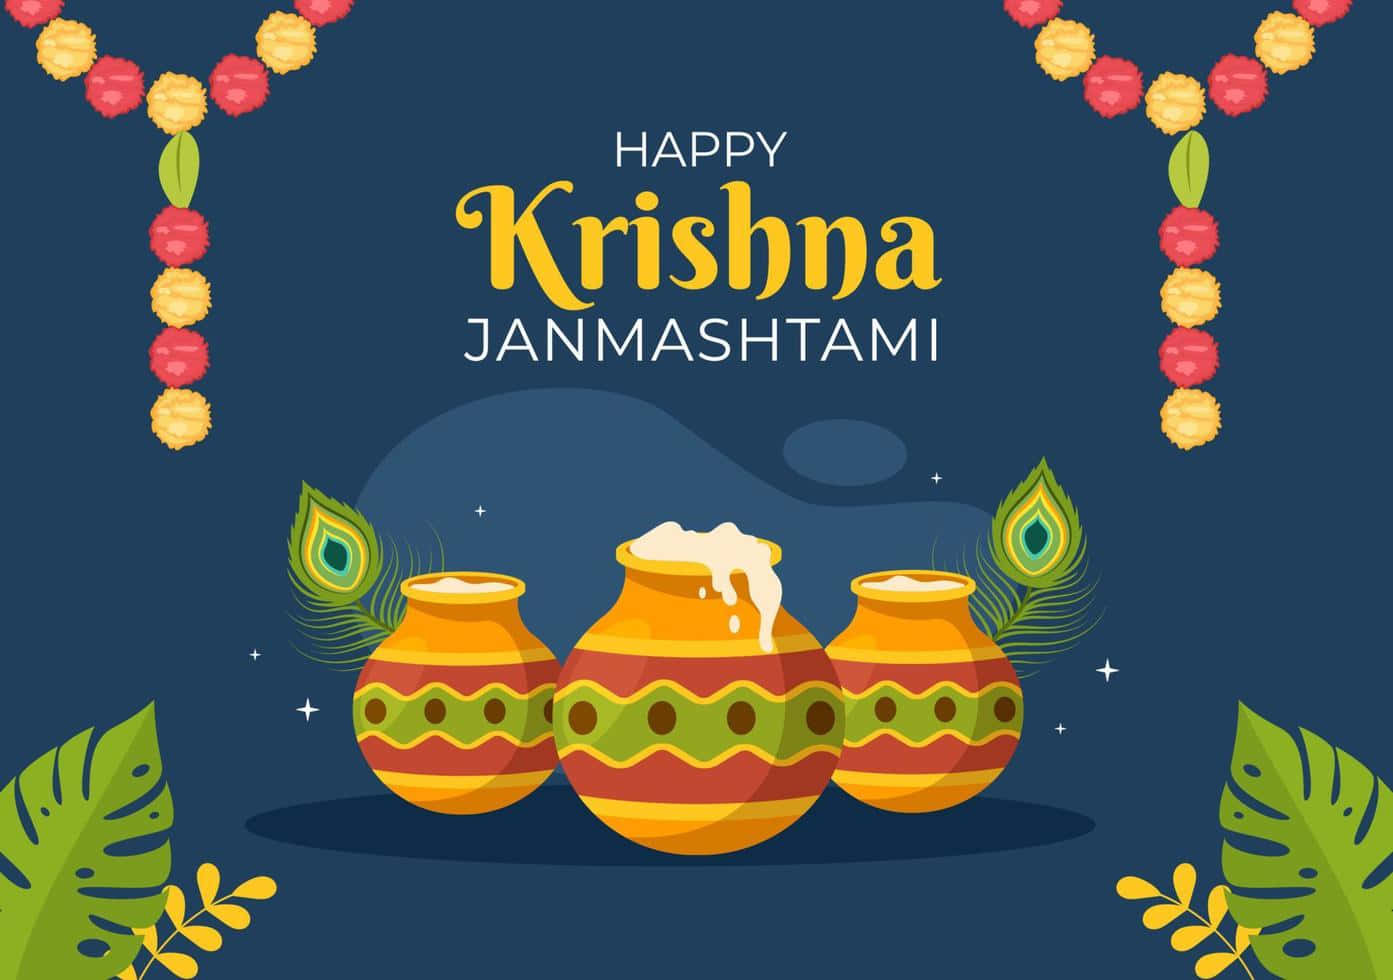 Celebrandosri Krishna Com Devoção Na Ocasião Do Janmashtami.